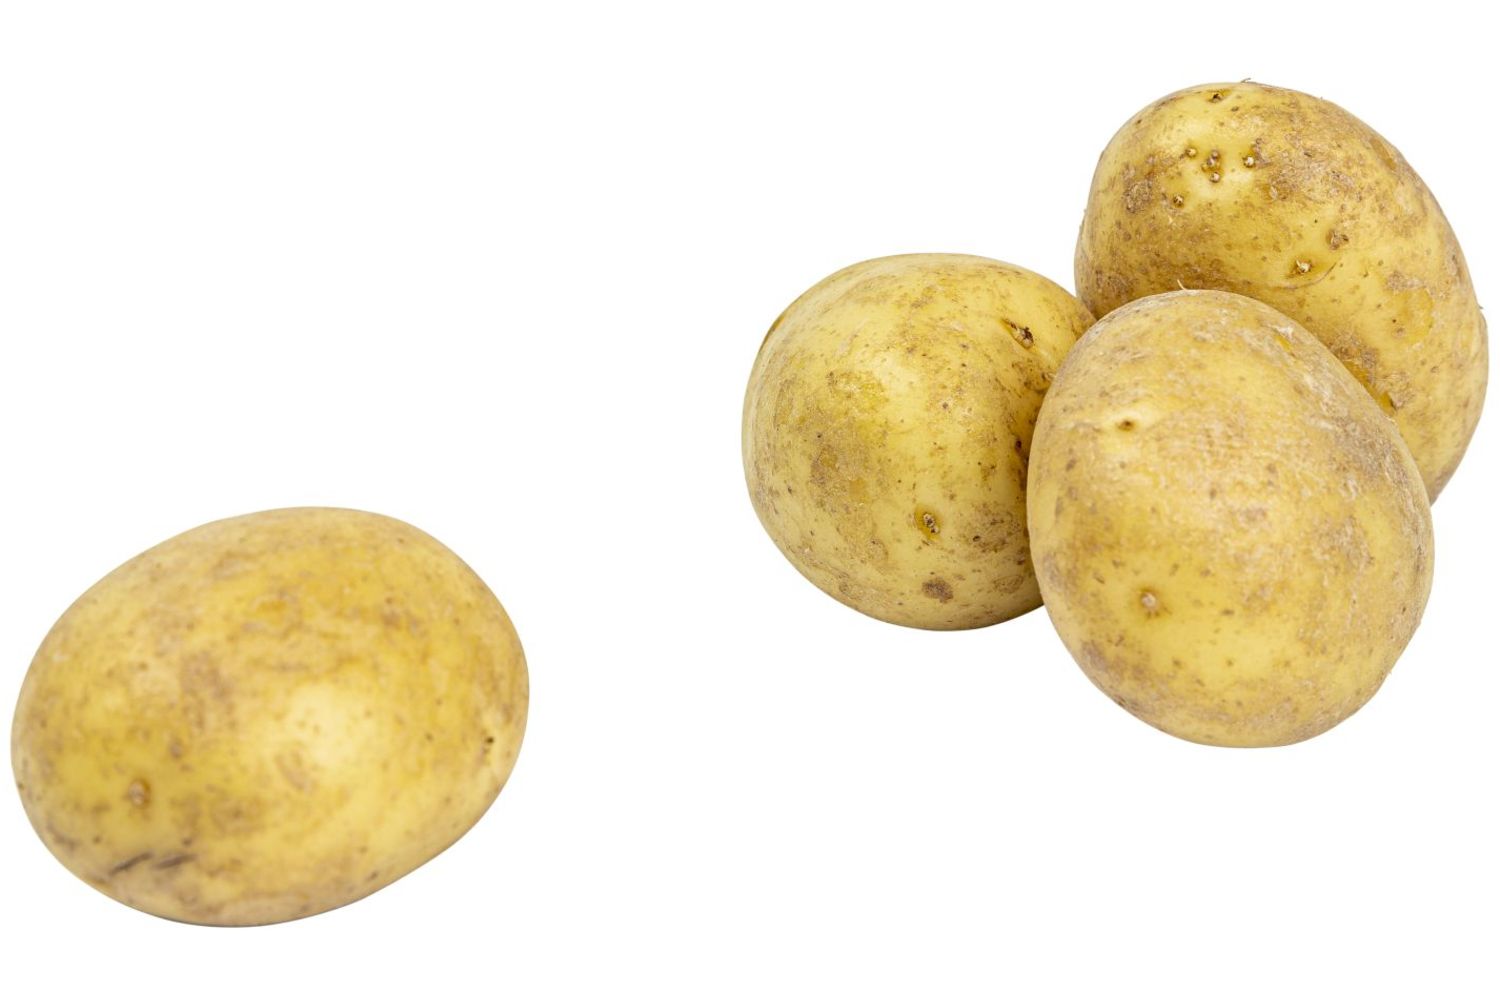 BIO Aardappelen kruimig 1kg stuk 1